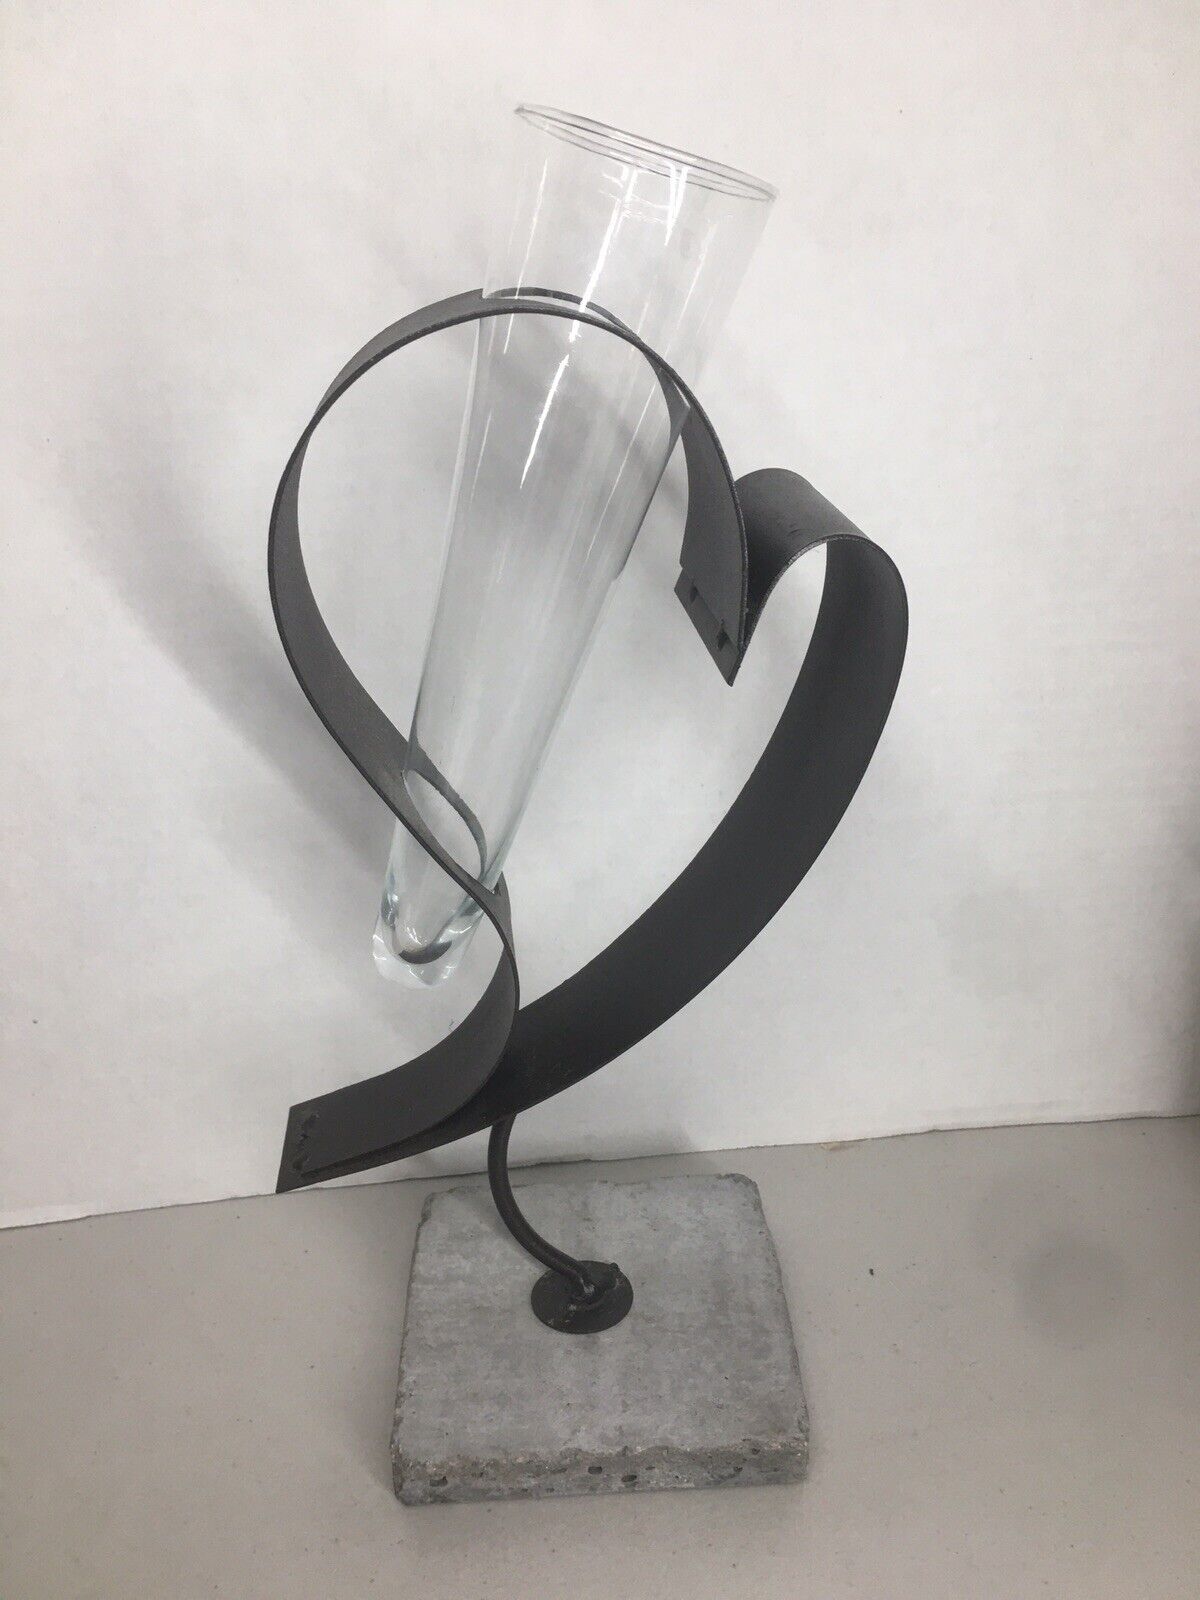 Unique Rustic Heart Sculpture Vase w/Concrete Base, Glass Vase Abstract 12”